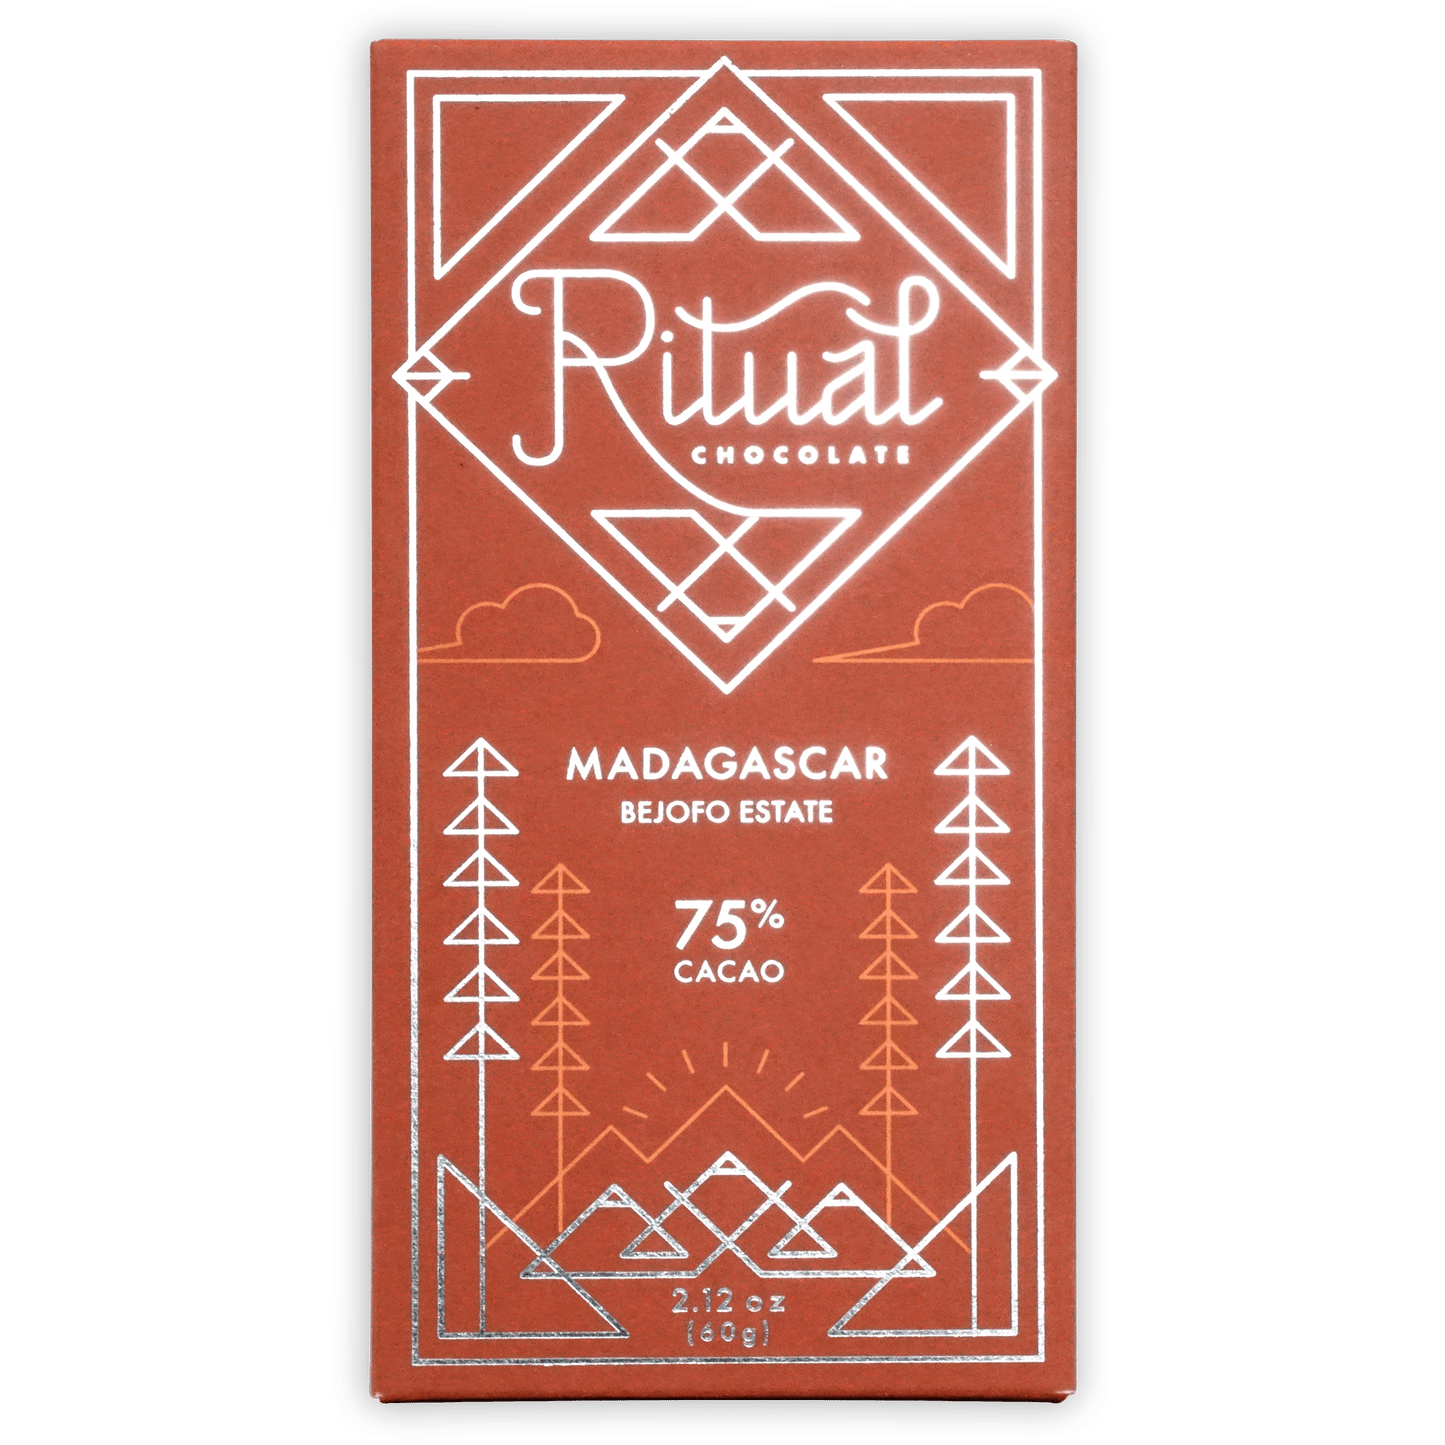 Ritual Madagascar 75%